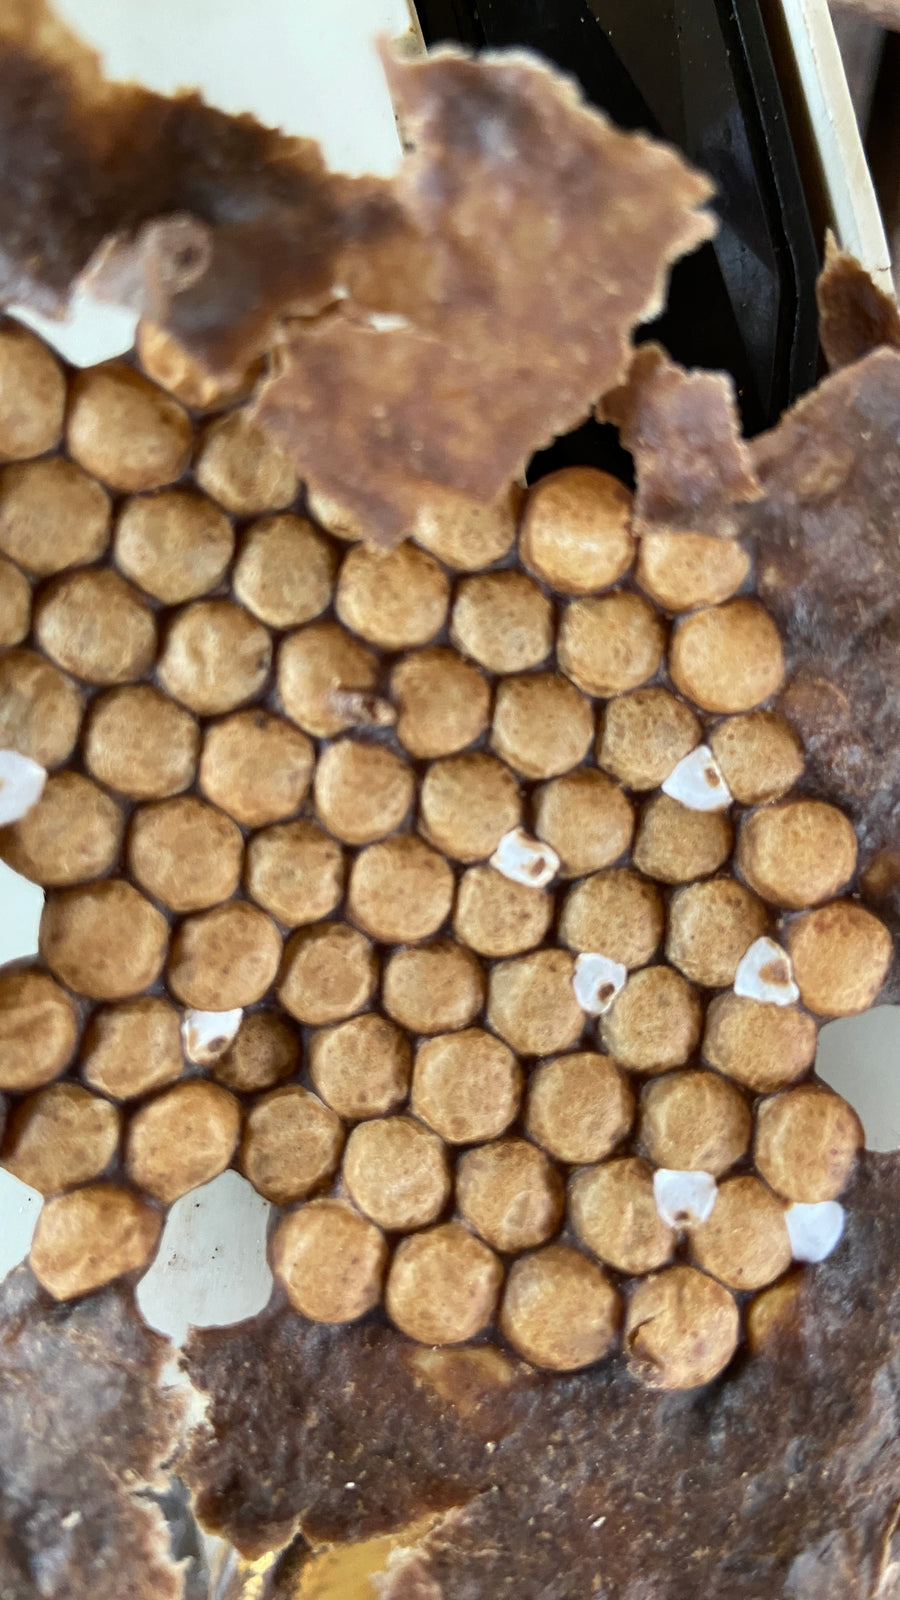 生蜂蜜 アマゾンのハリナシハチミツ メリポナグランディス